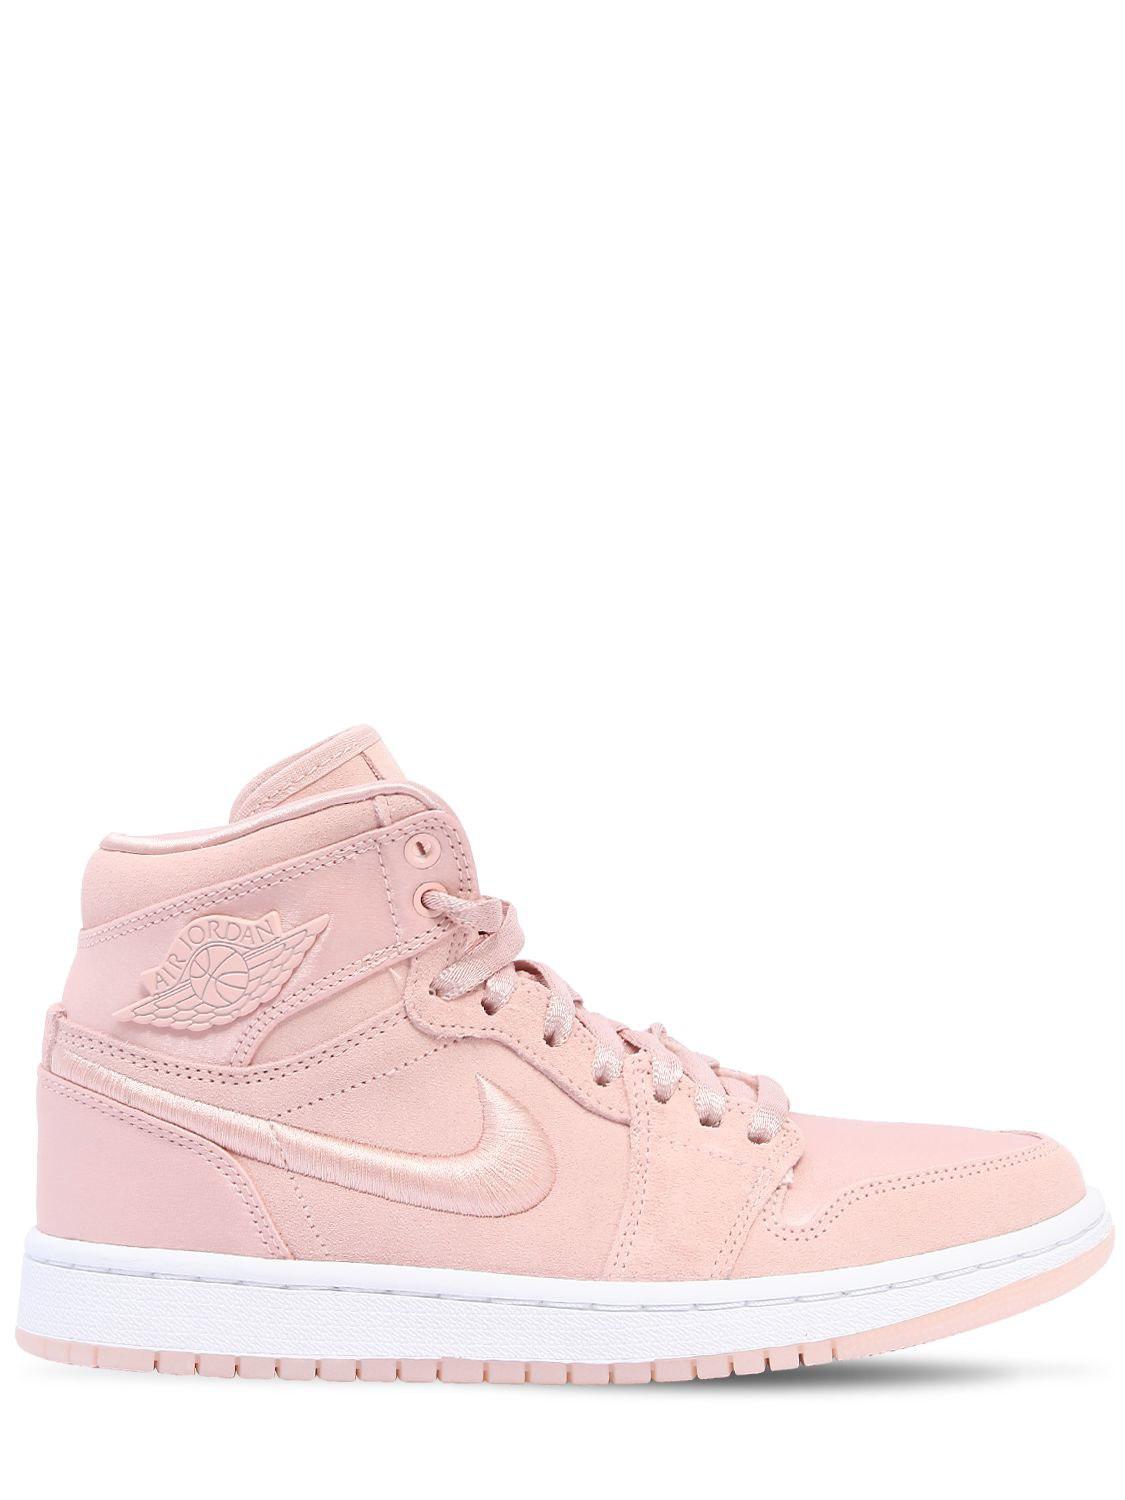 Nike Air Jordan 1 Retro High Top Sneakers in Pink | Lyst